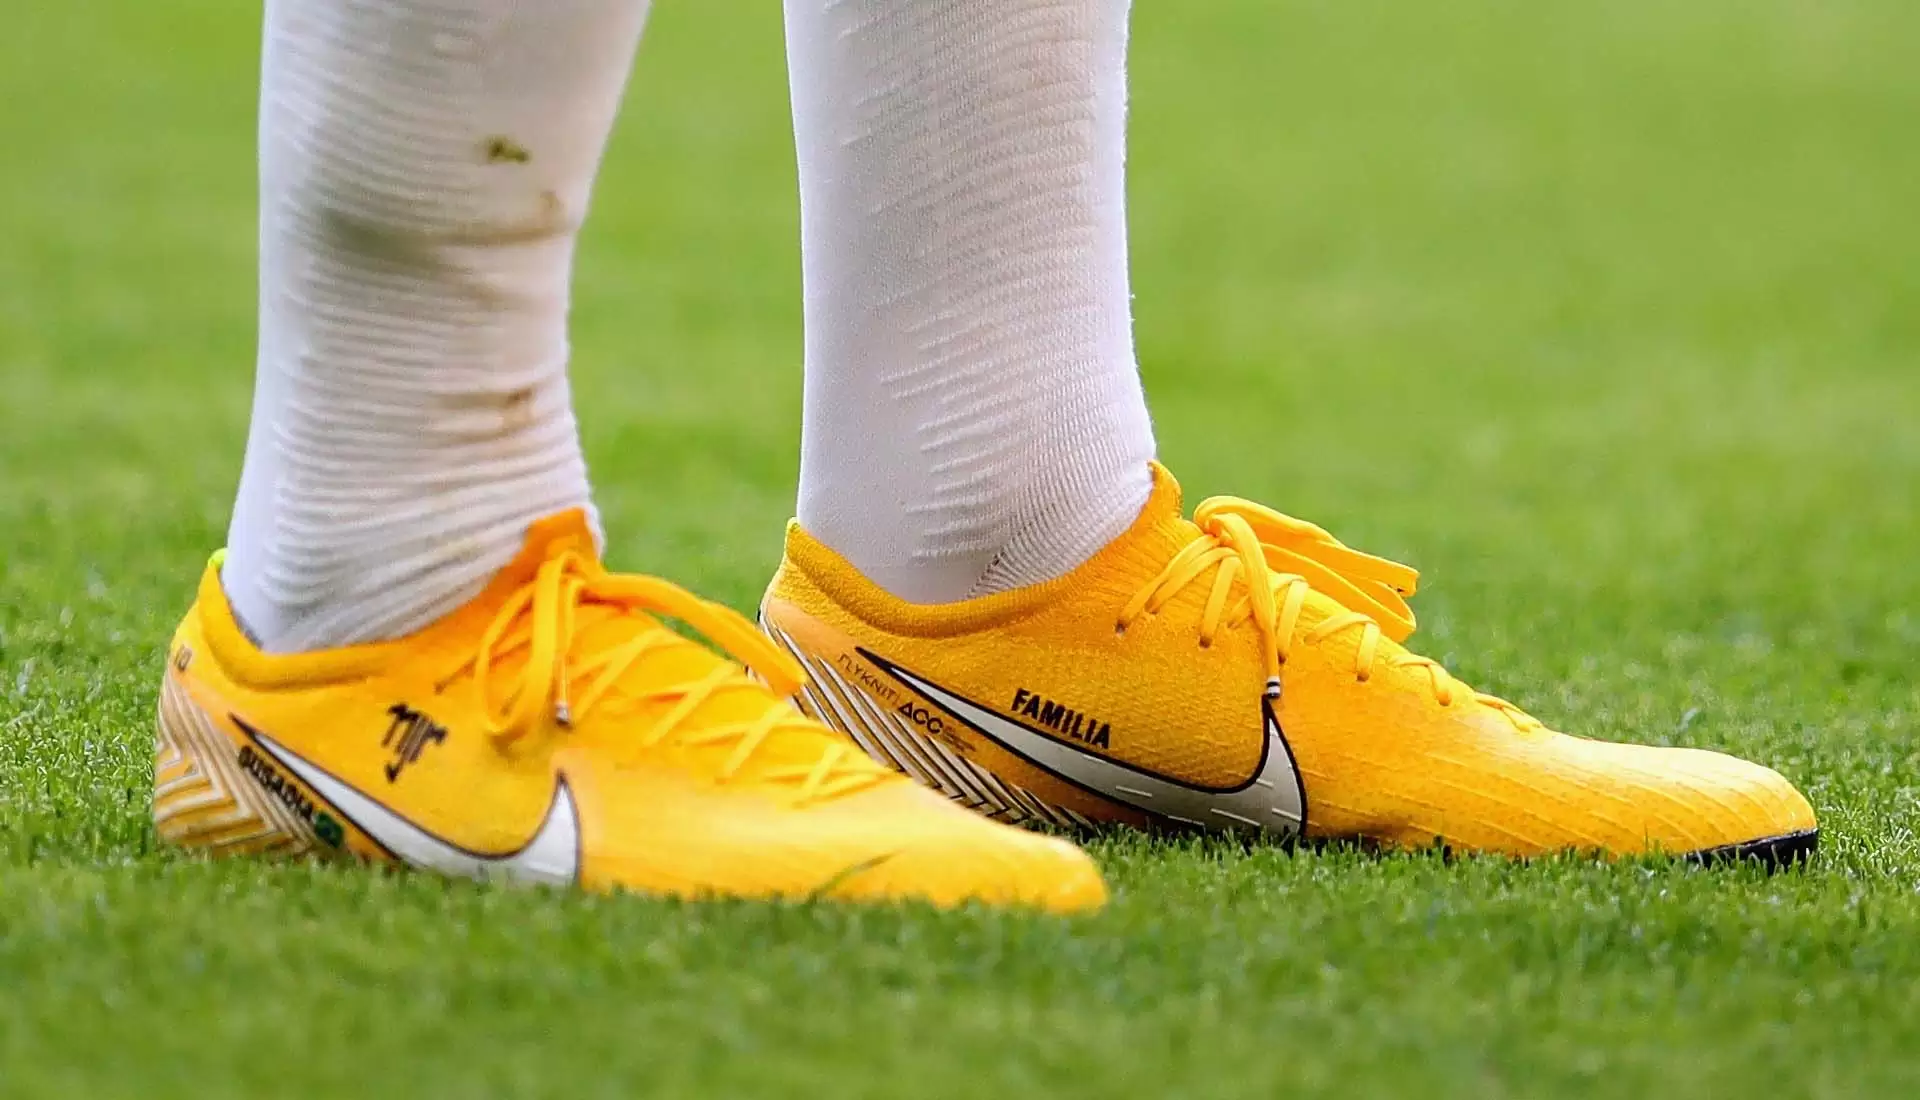 Nike presentó uno de los modelos más lindos botines inspirados Neymar y la del Mundo | Marketing